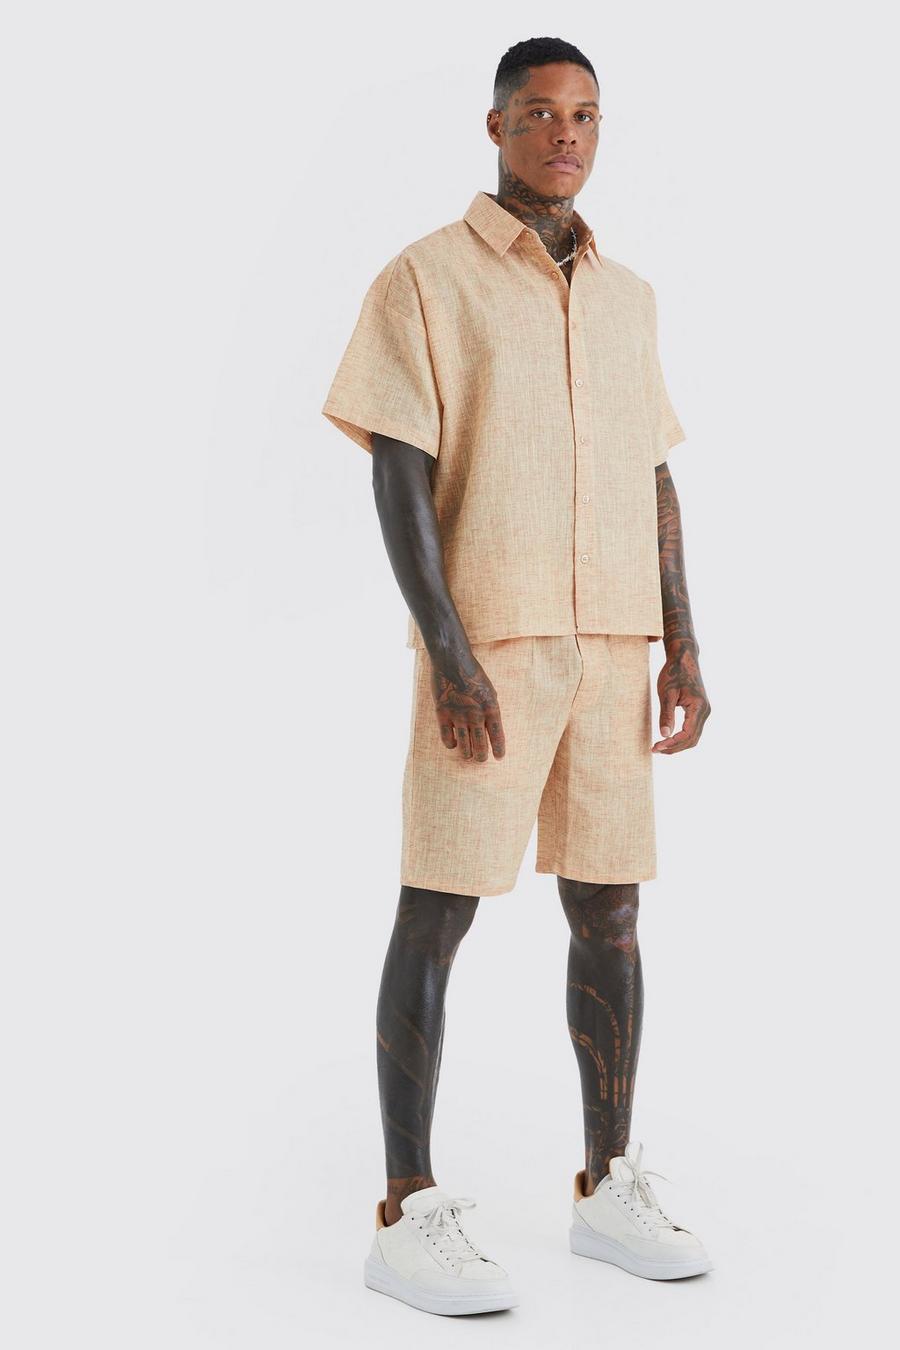 Pantalón corto y camisa recta efecto lino de manga corta, Chocolate image number 1